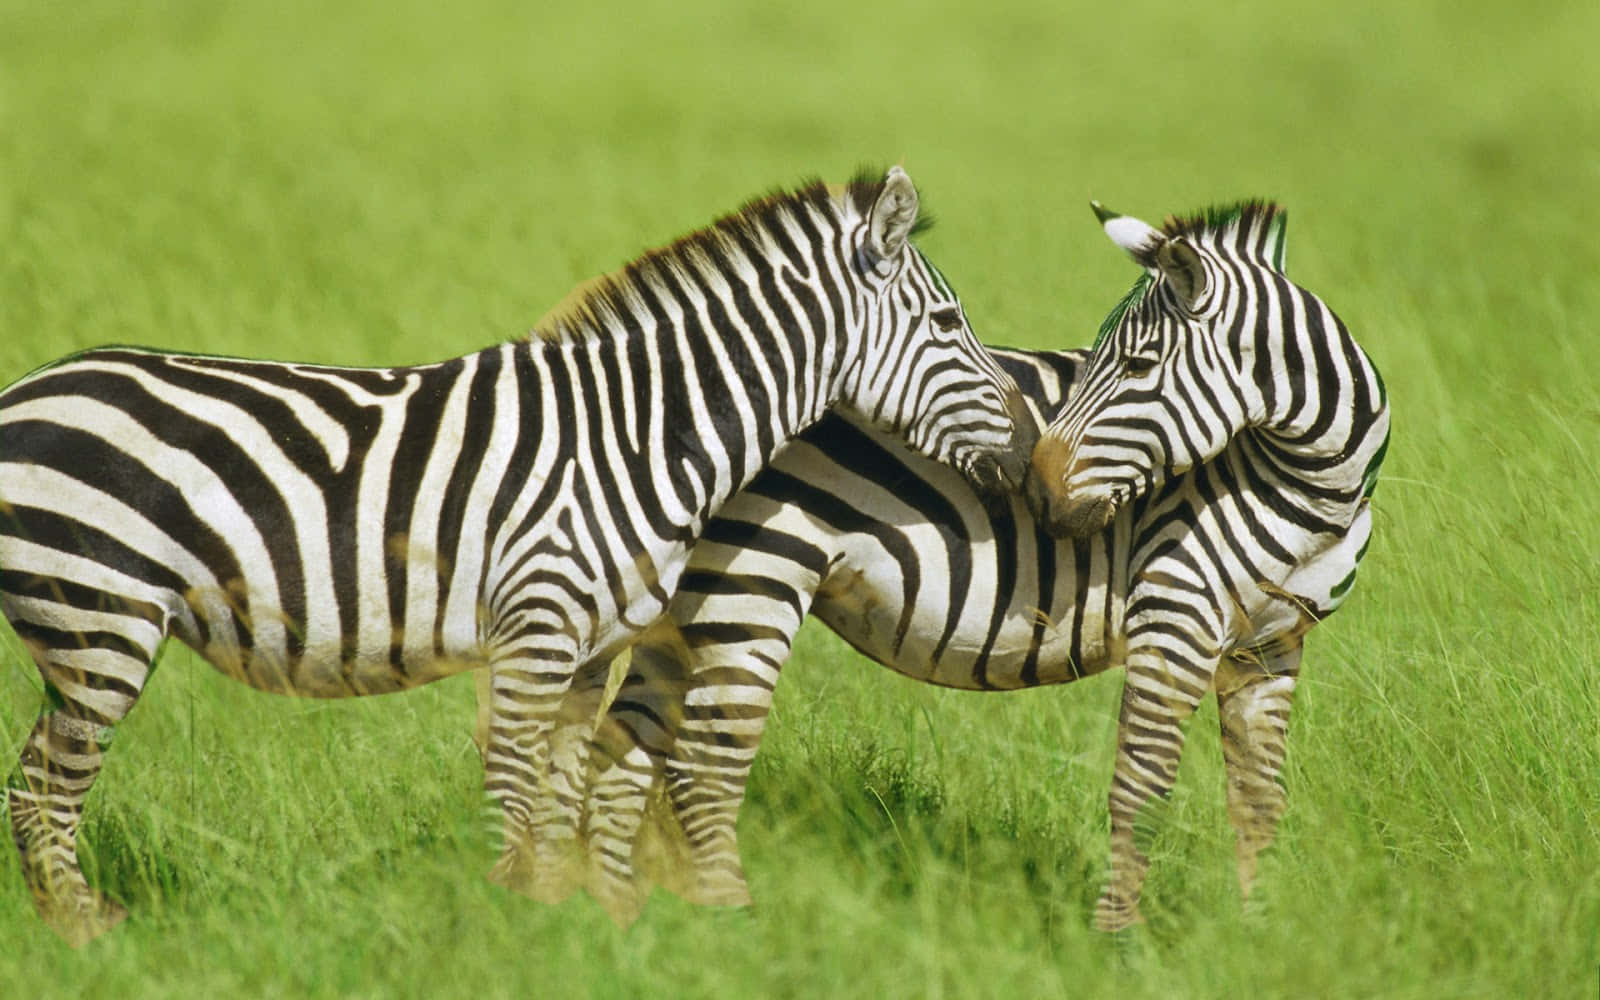 "Beautiful Zebra in Wildlife"